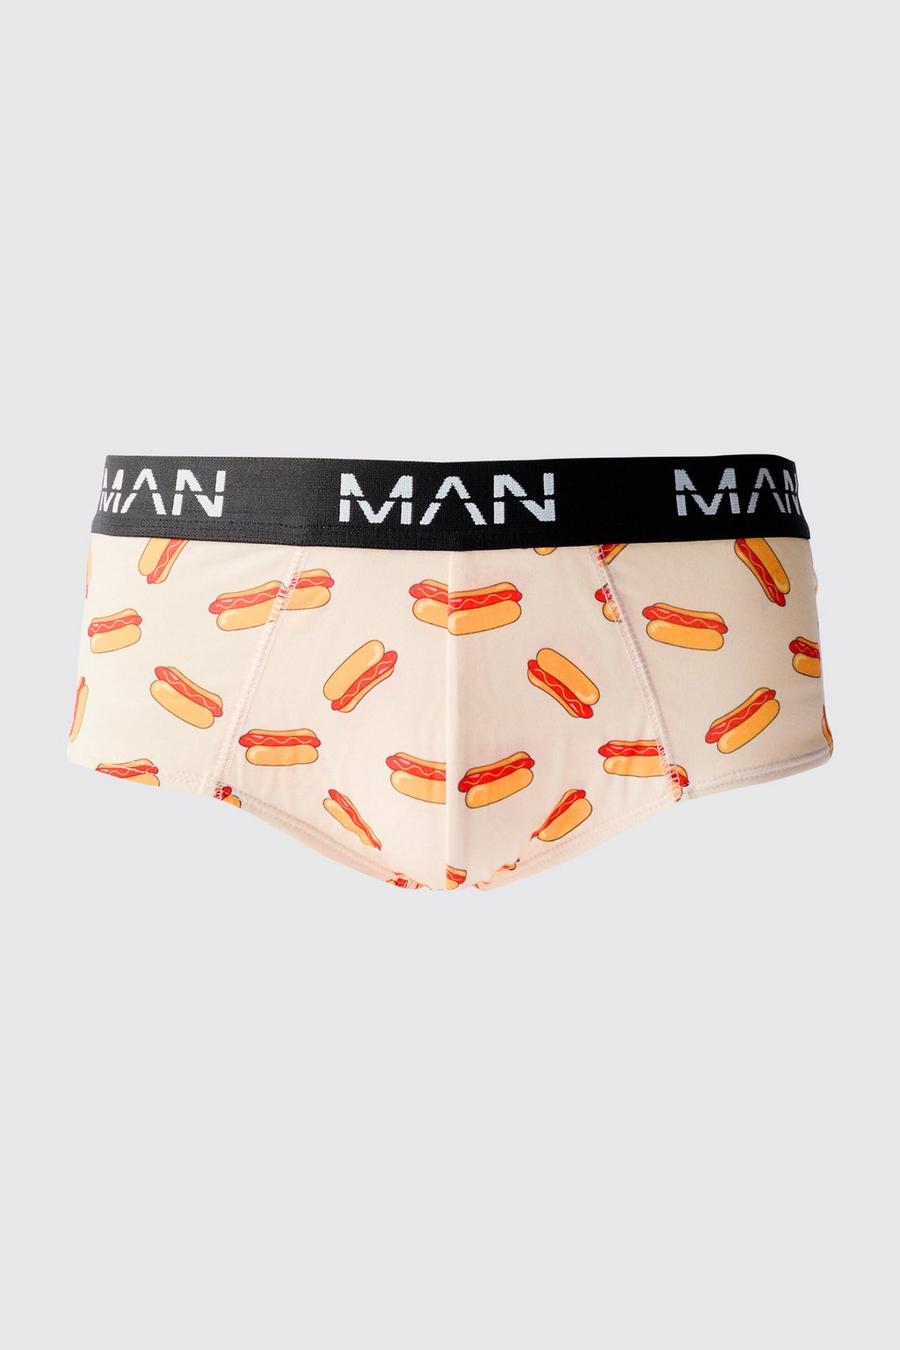 Multi Man Hot Dog Bikini Broekje